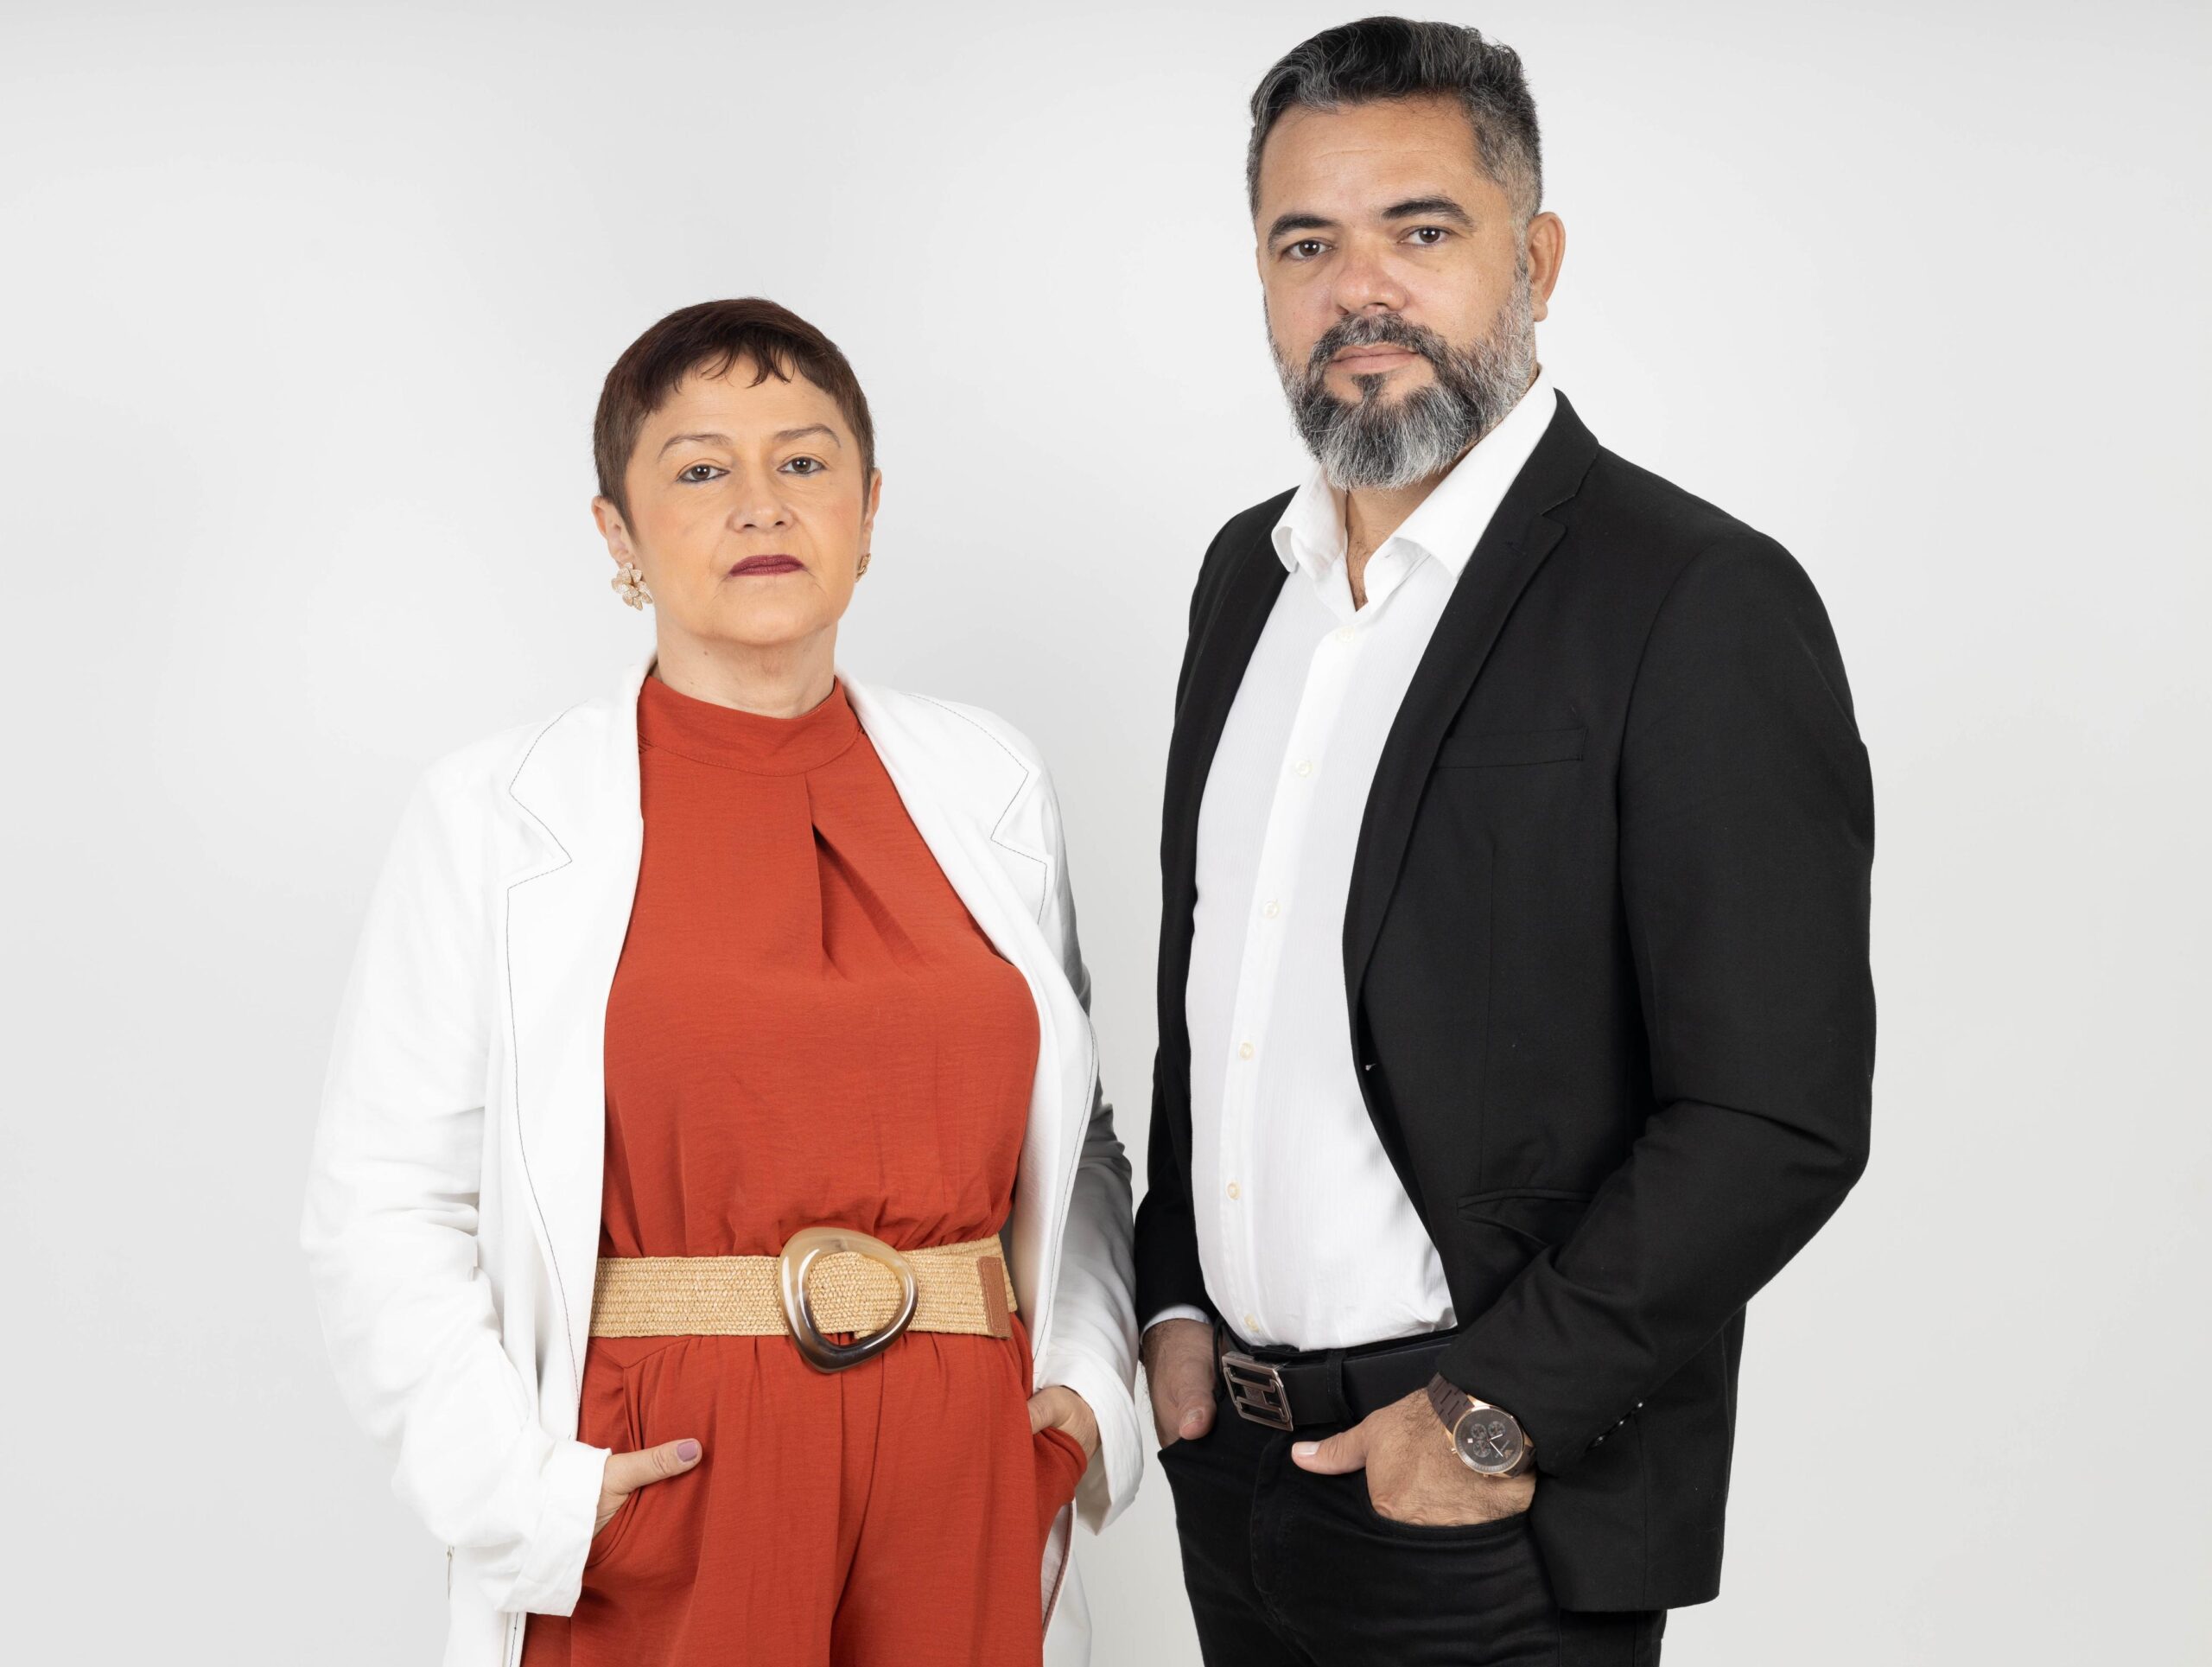 Chapa “API Unida e Renovada”, liderada pelos jornalistas Marcos Wéric e Karla Alencar, é a única inscrita e busca a reeleição